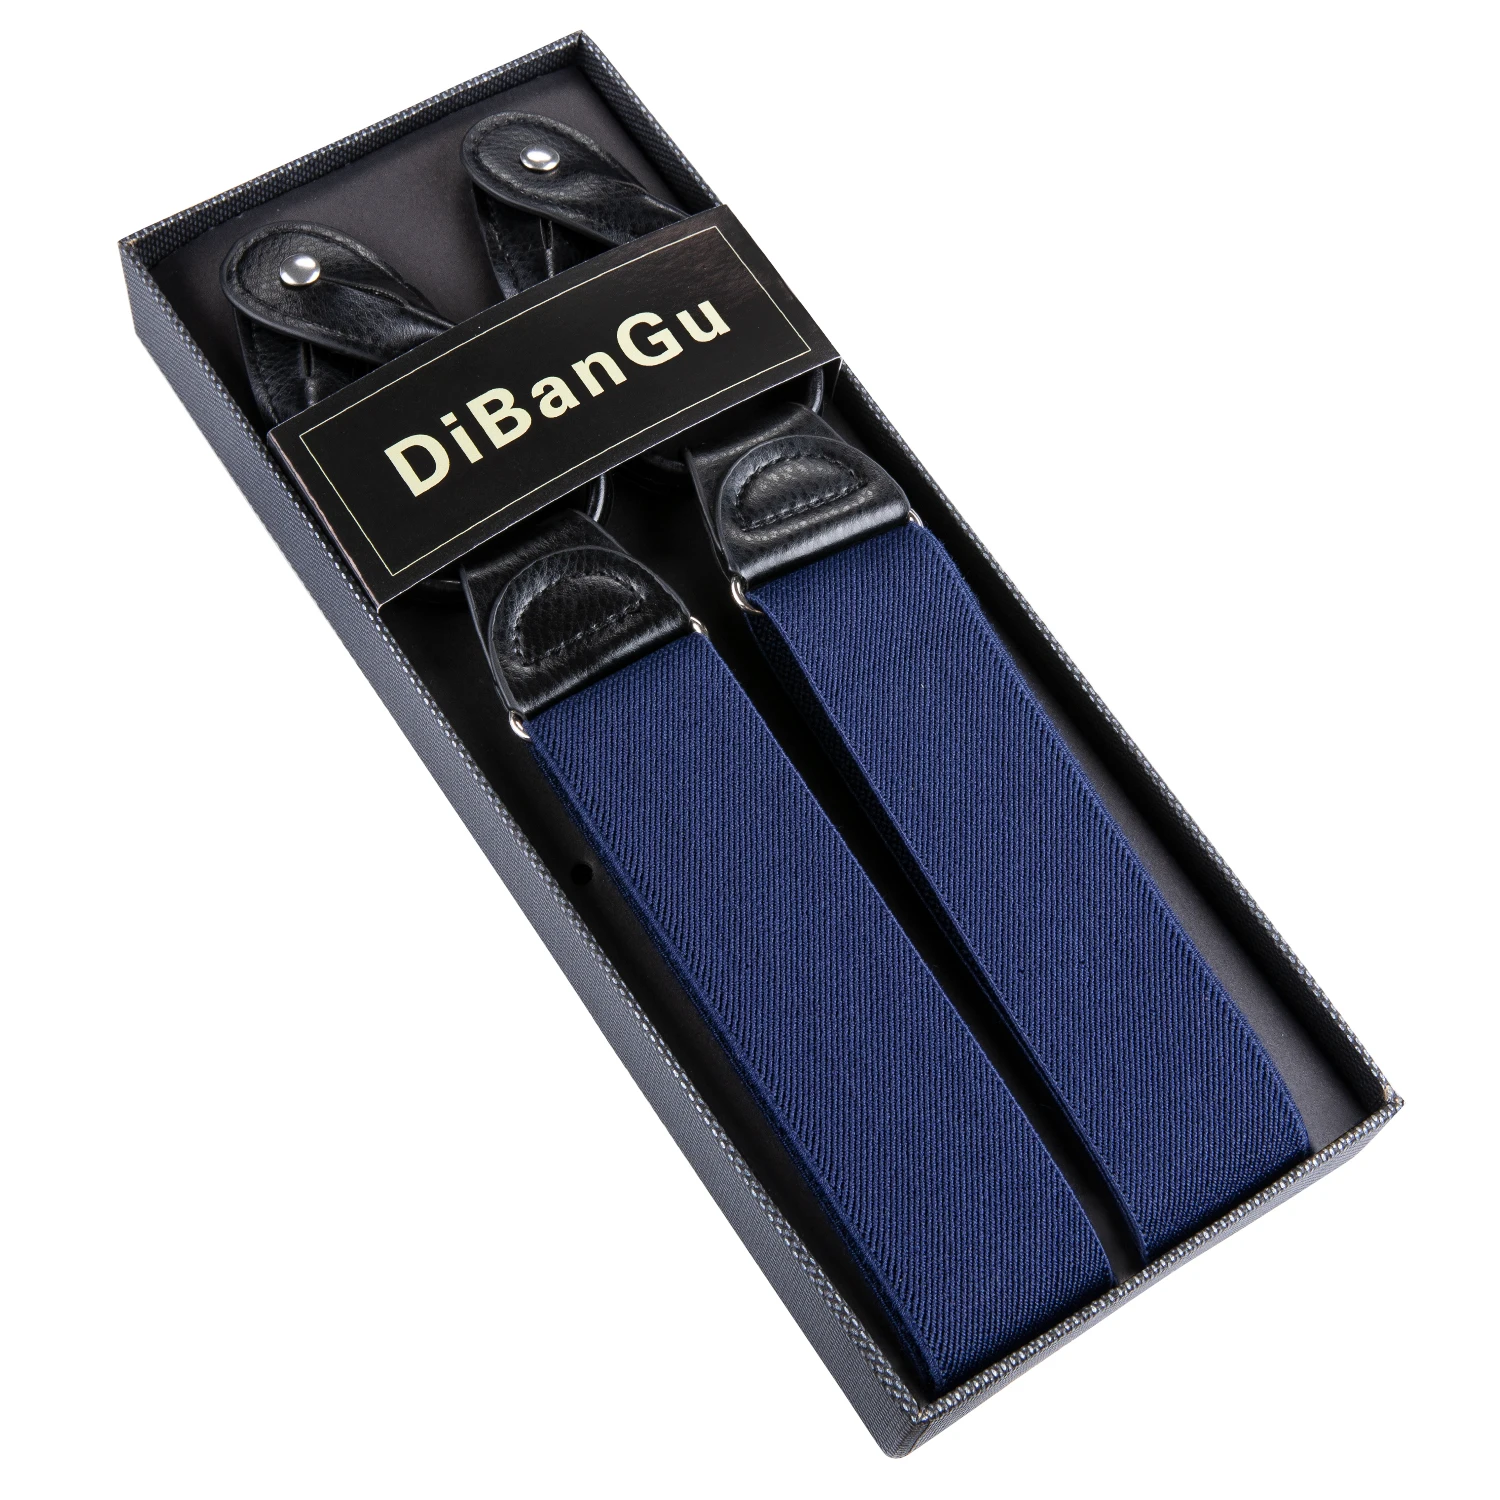 DiBanGu дизайнер 3,5 см синий подтяжки для женщин в для мужчин кожаные подтяжки Регулируемый 6 зажимы подтяжки коммерческий Вестерн